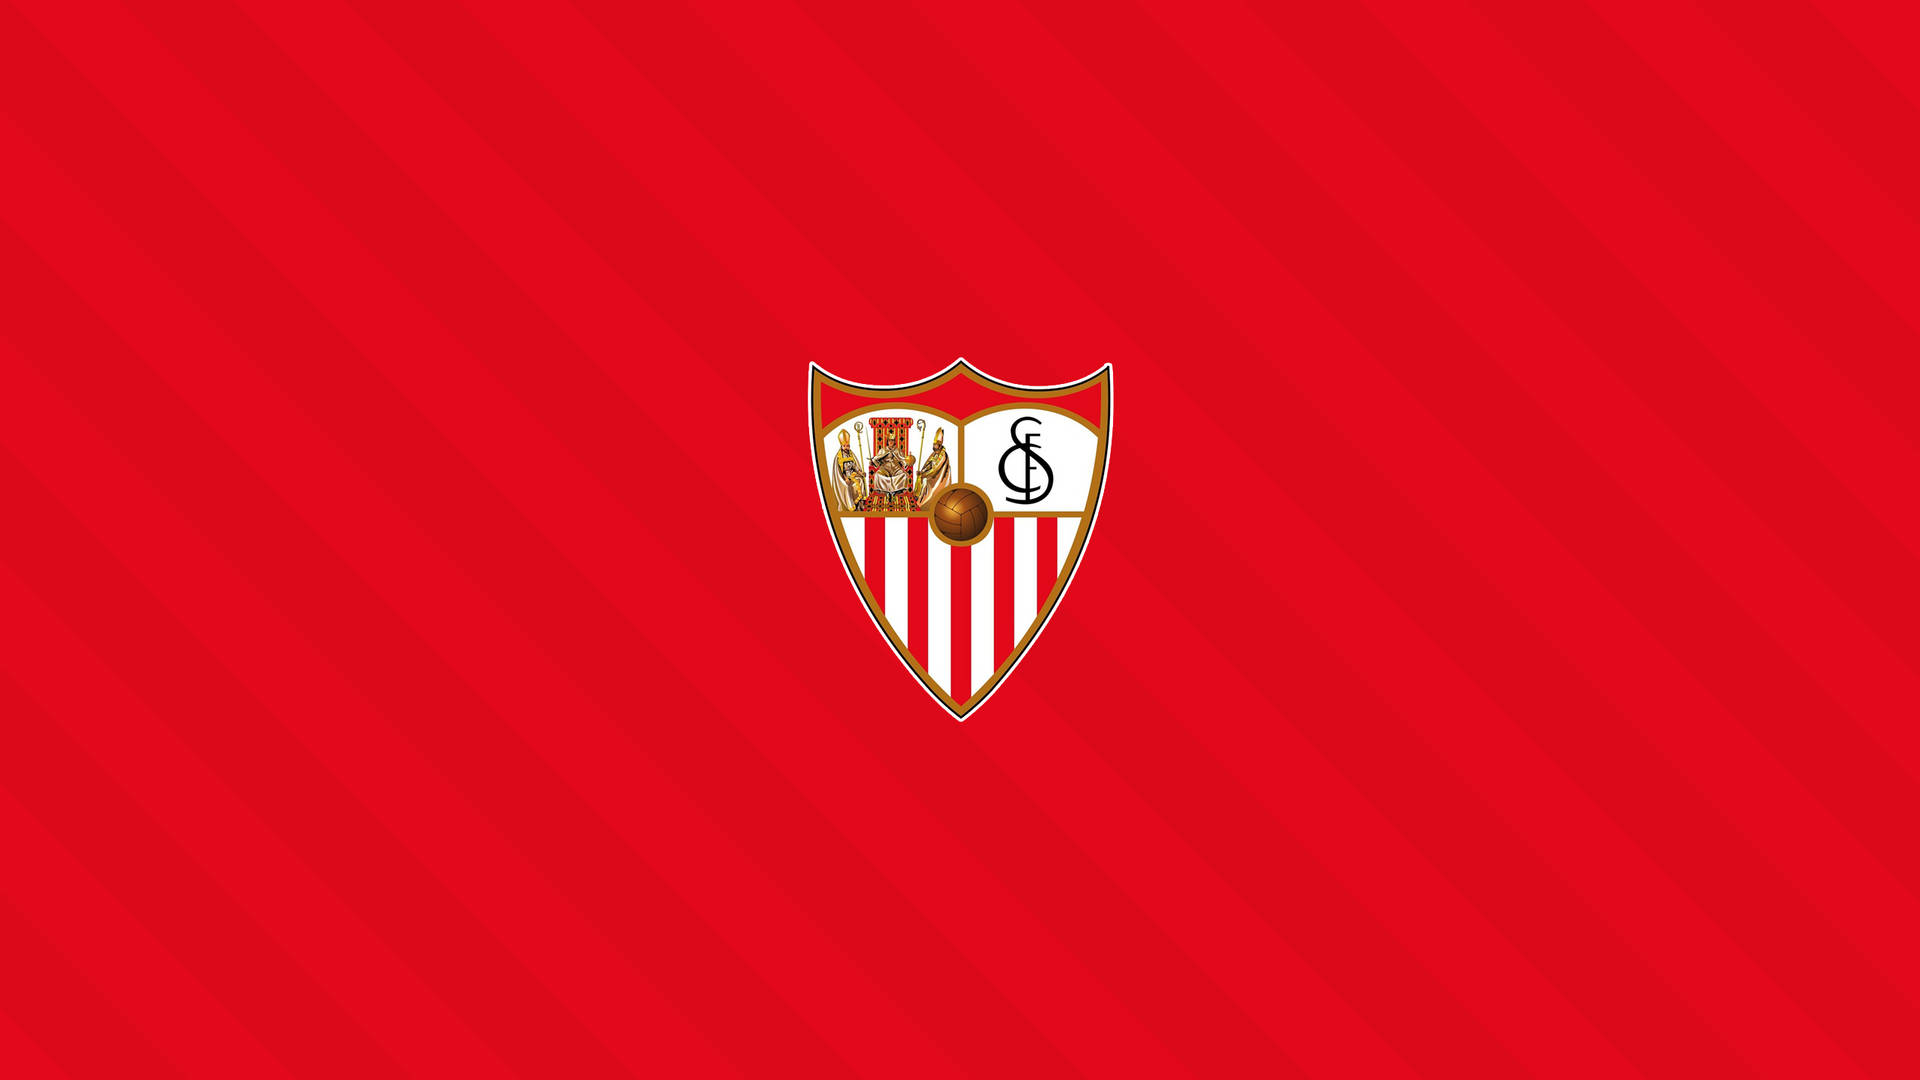 Sevillafc Logo Im Minimalistischen Rot. Wallpaper